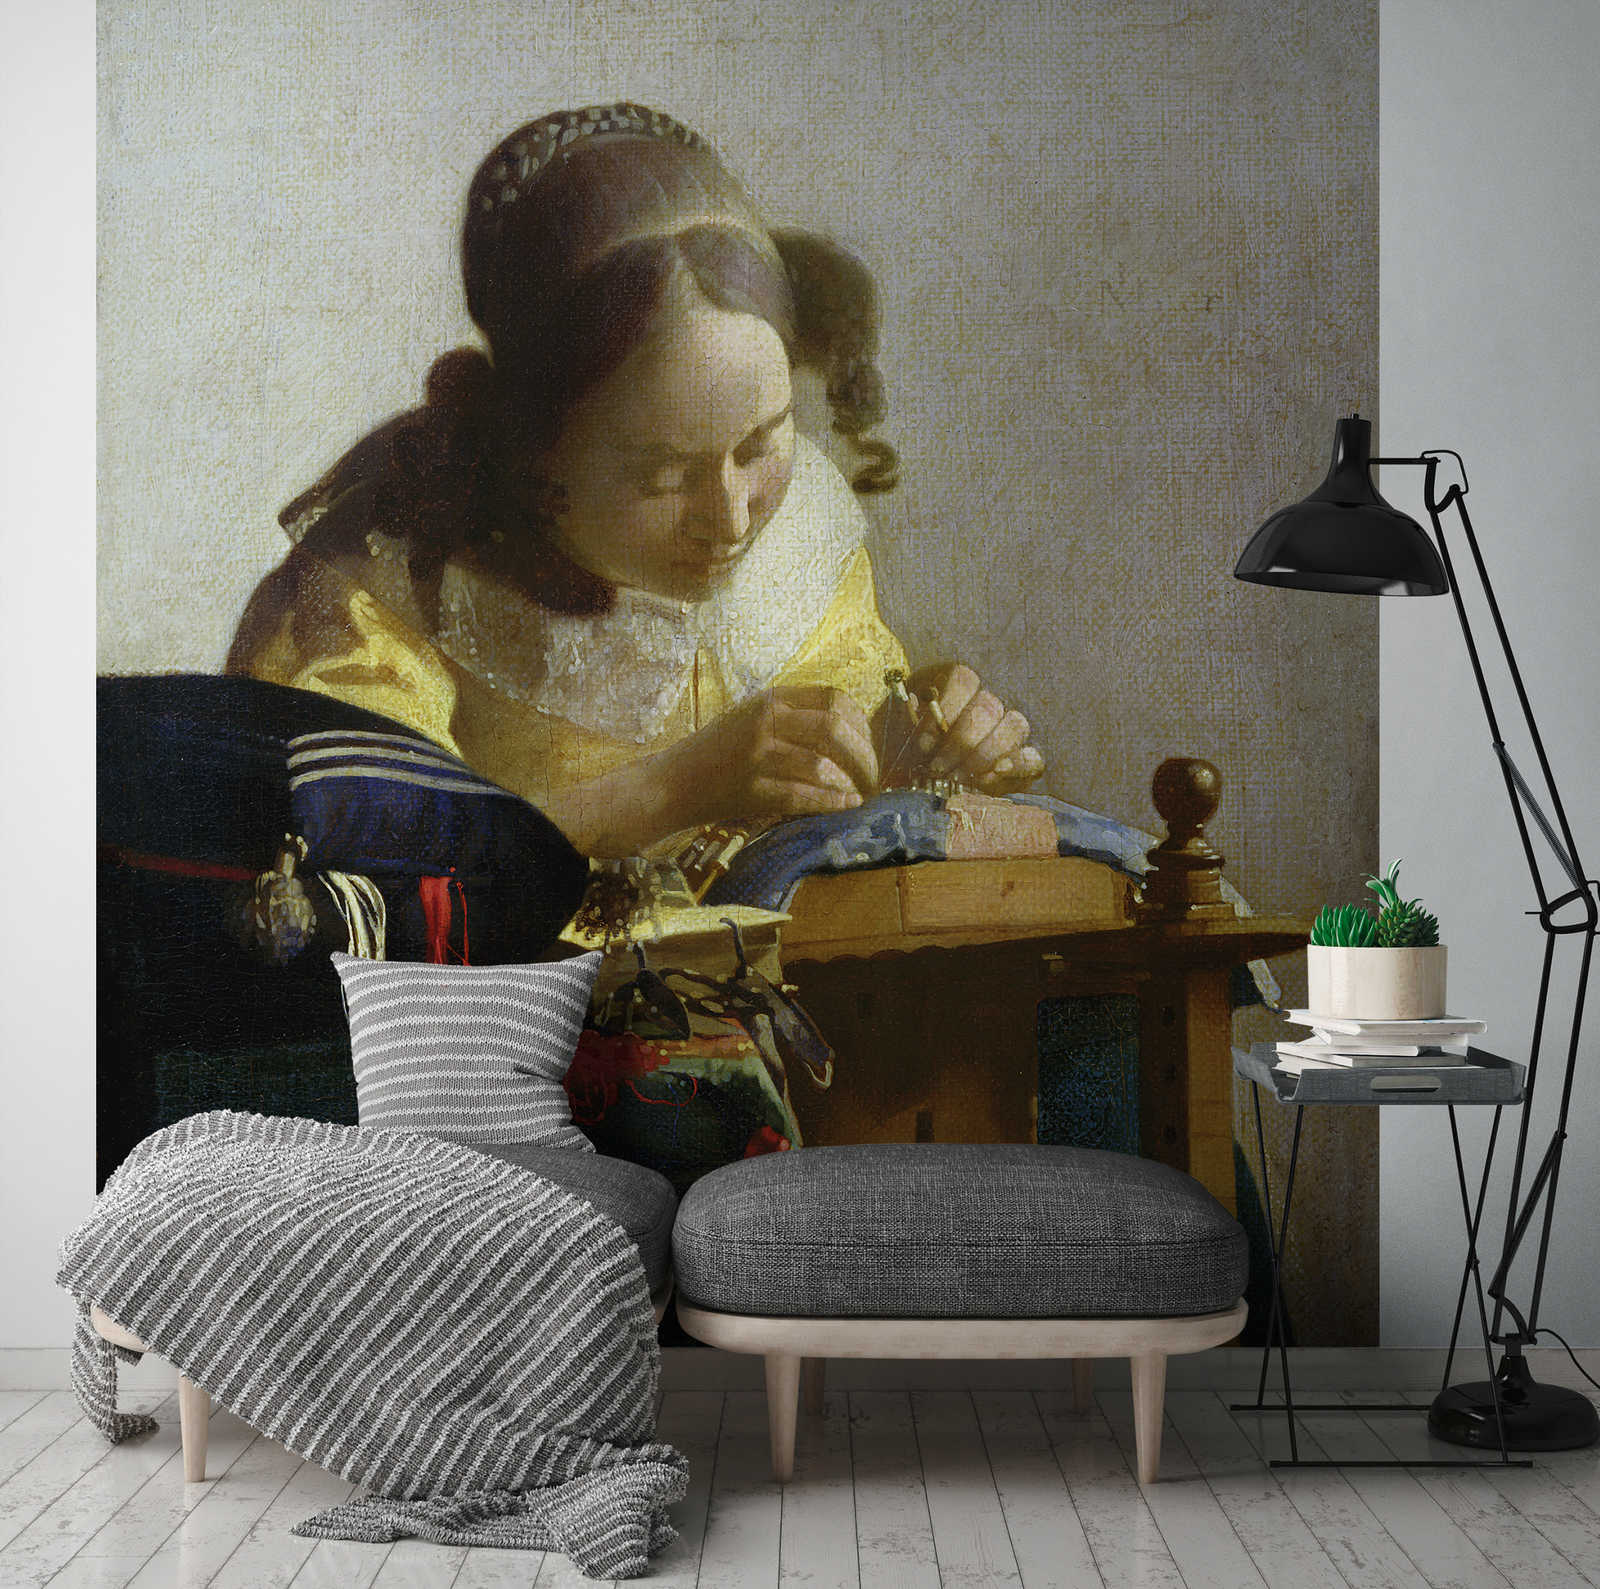             De kantwerksters" muurschildering van Jan Vermeer
        